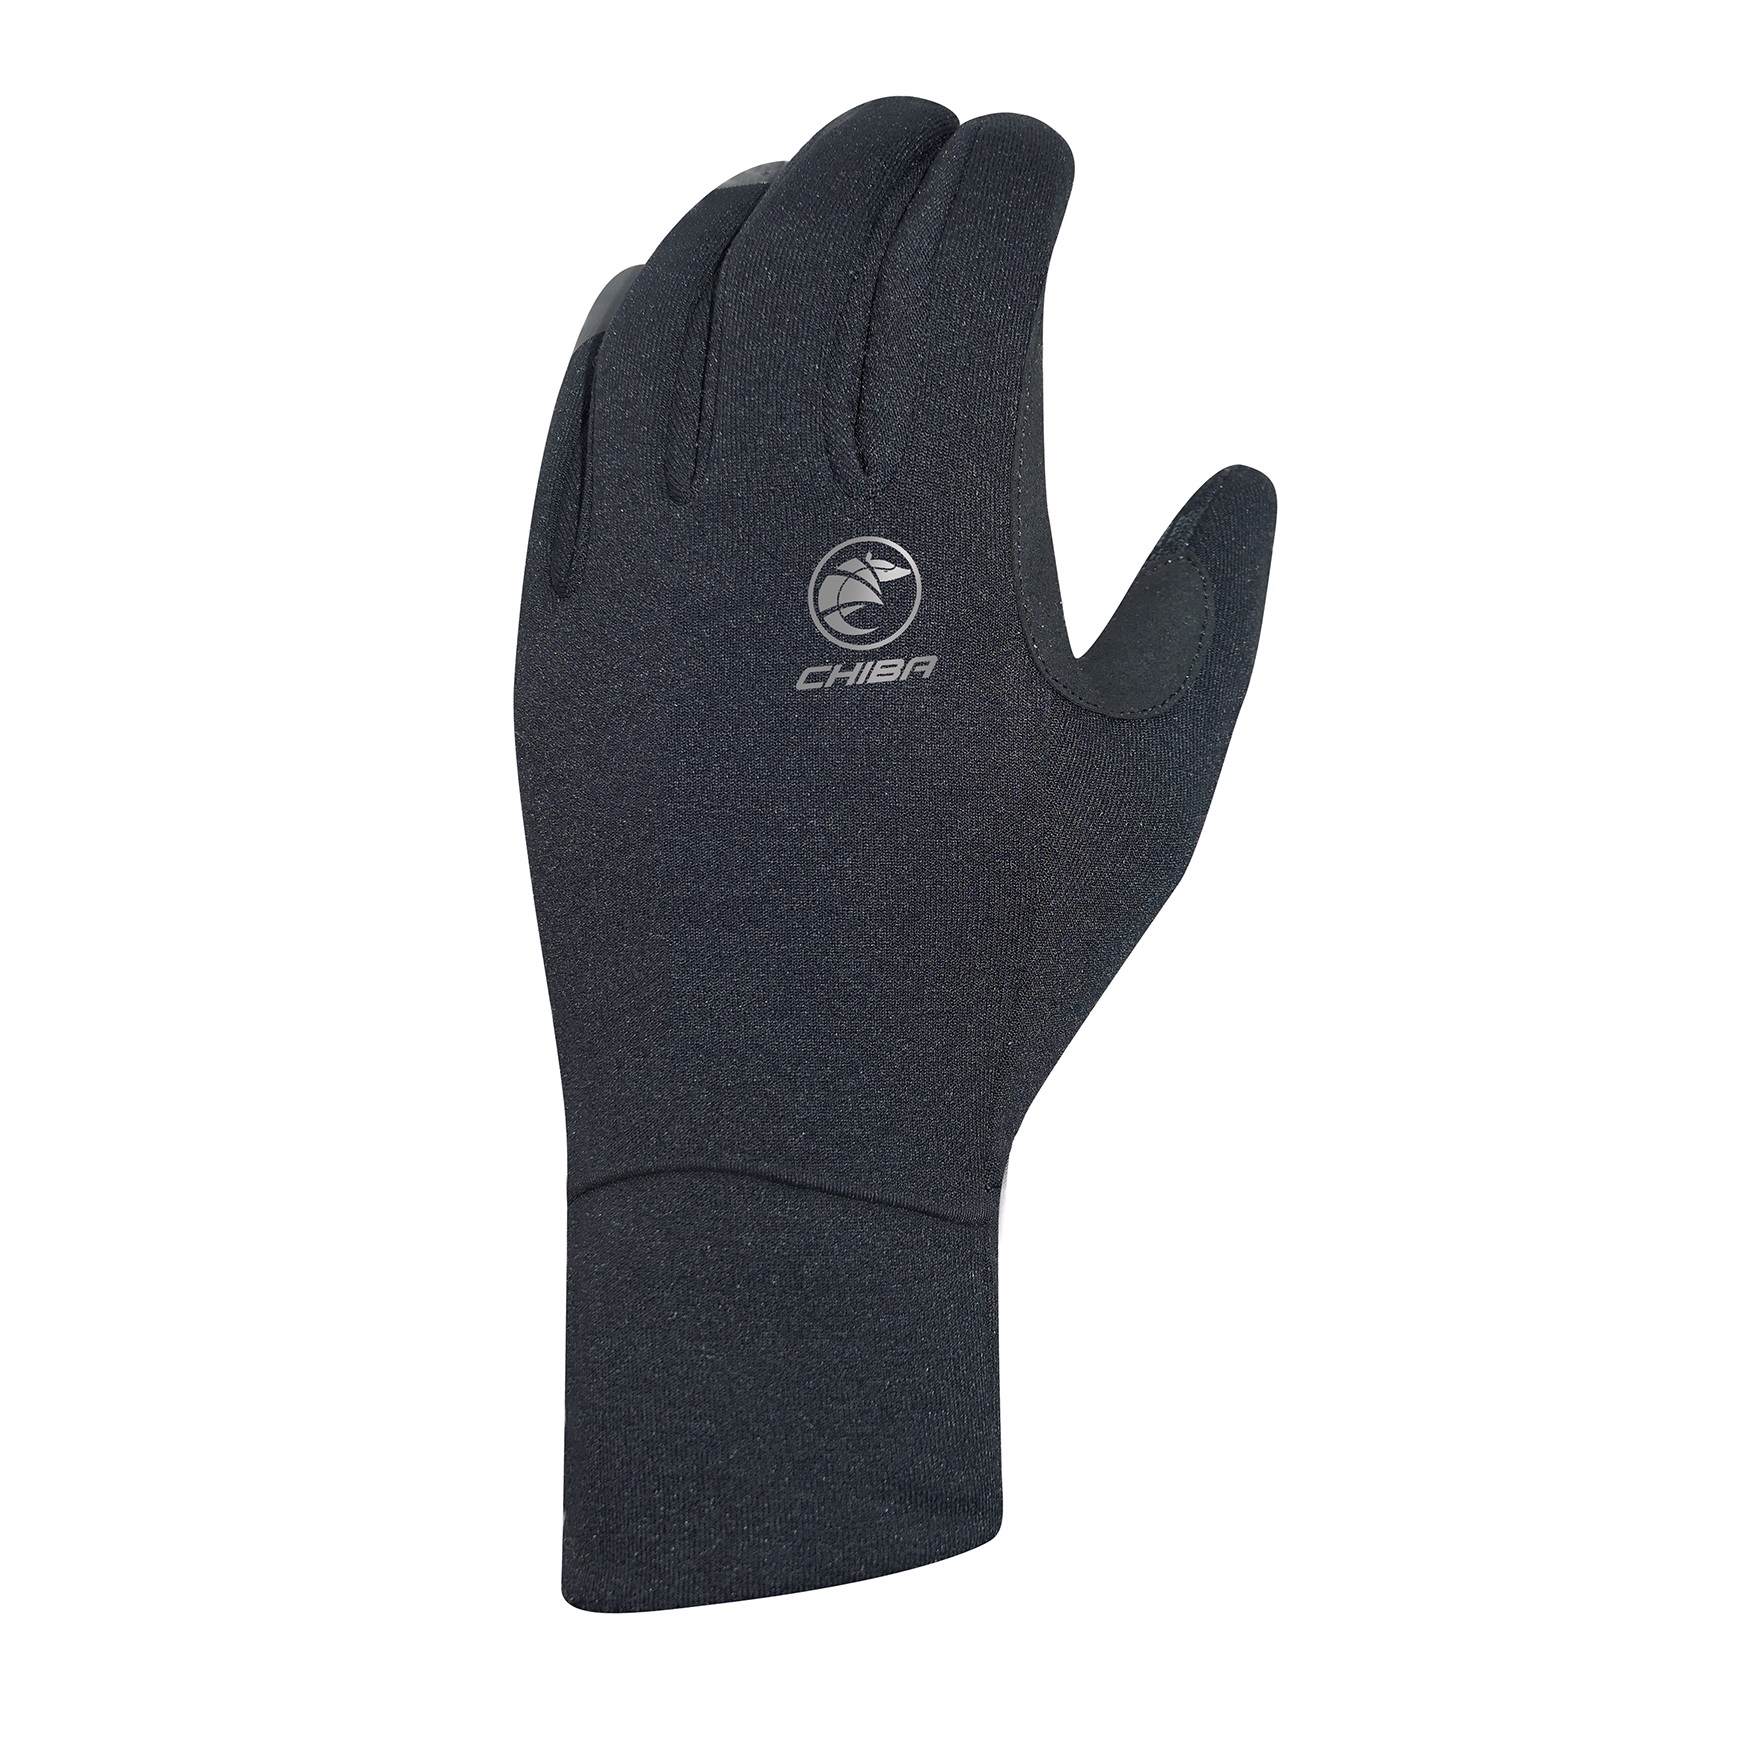 Productfoto van Chiba Polarfleece Fietshandschoenen - zwart